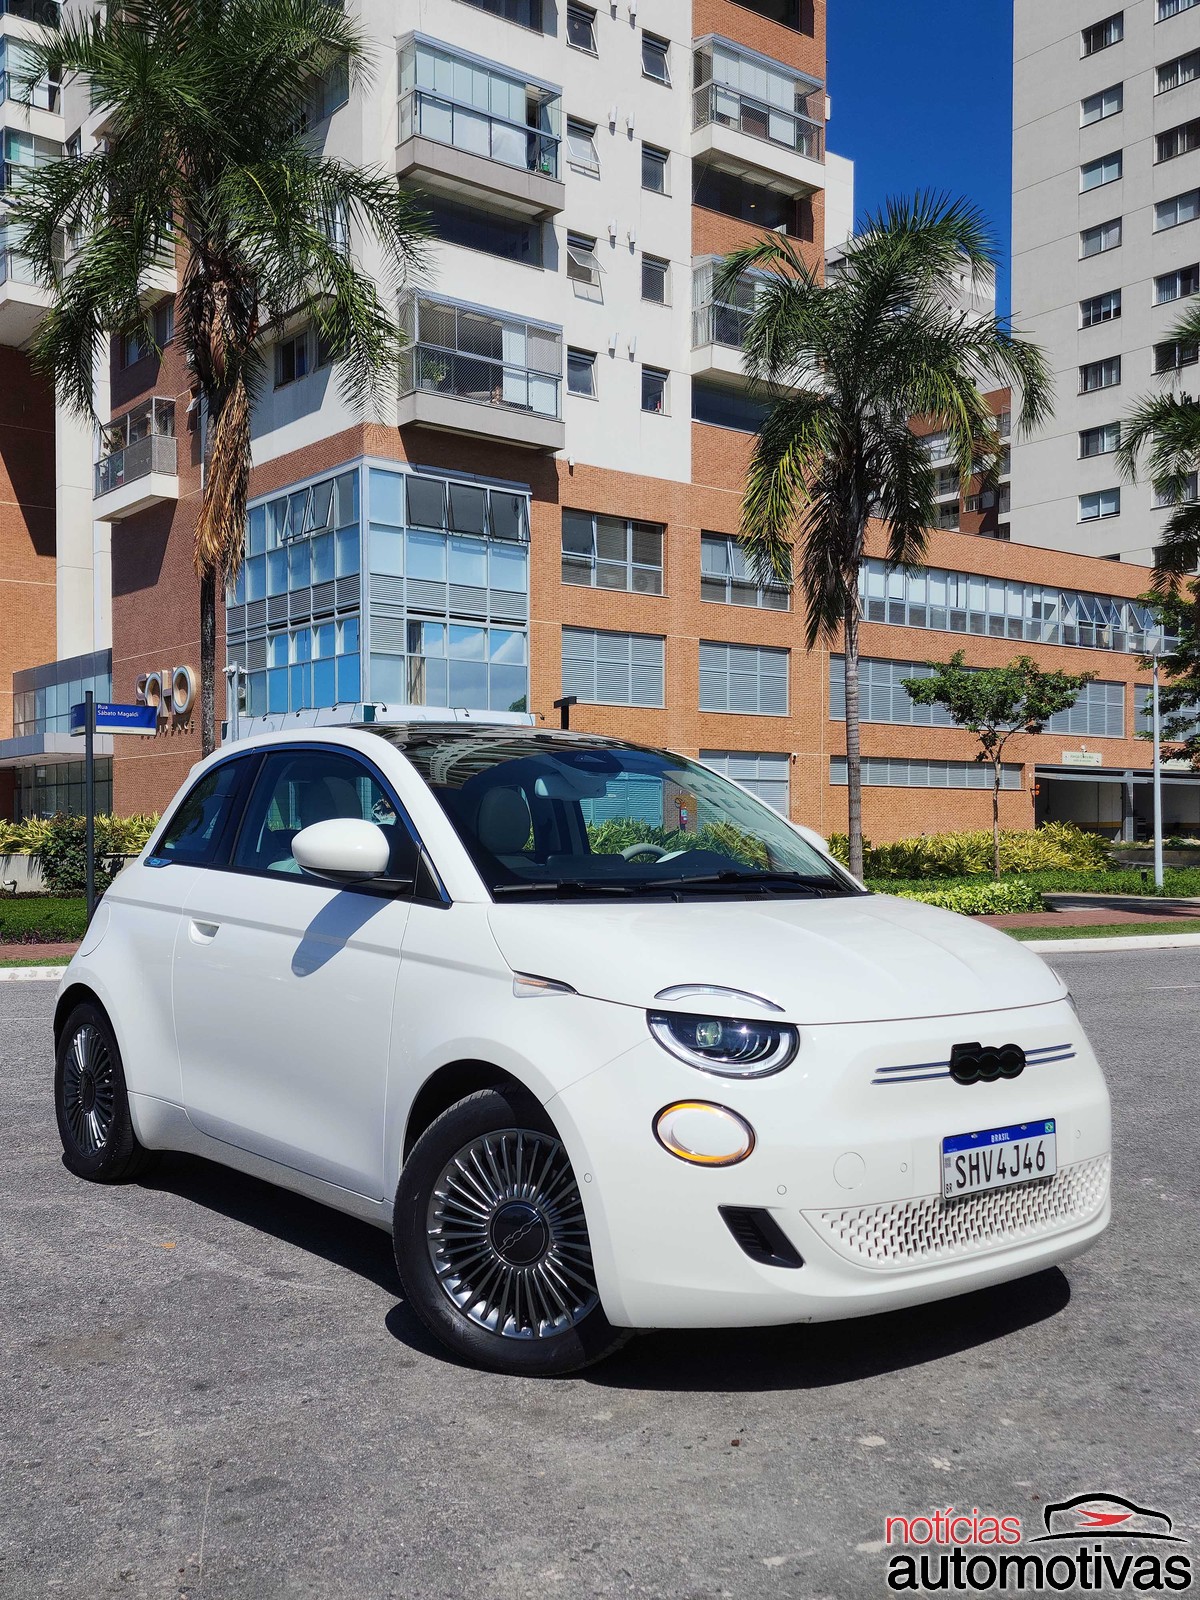 Avaliação Fiat 500e: Primeiro Fiat elétrico no mercado nacional, ele esbanja charme “retrô”